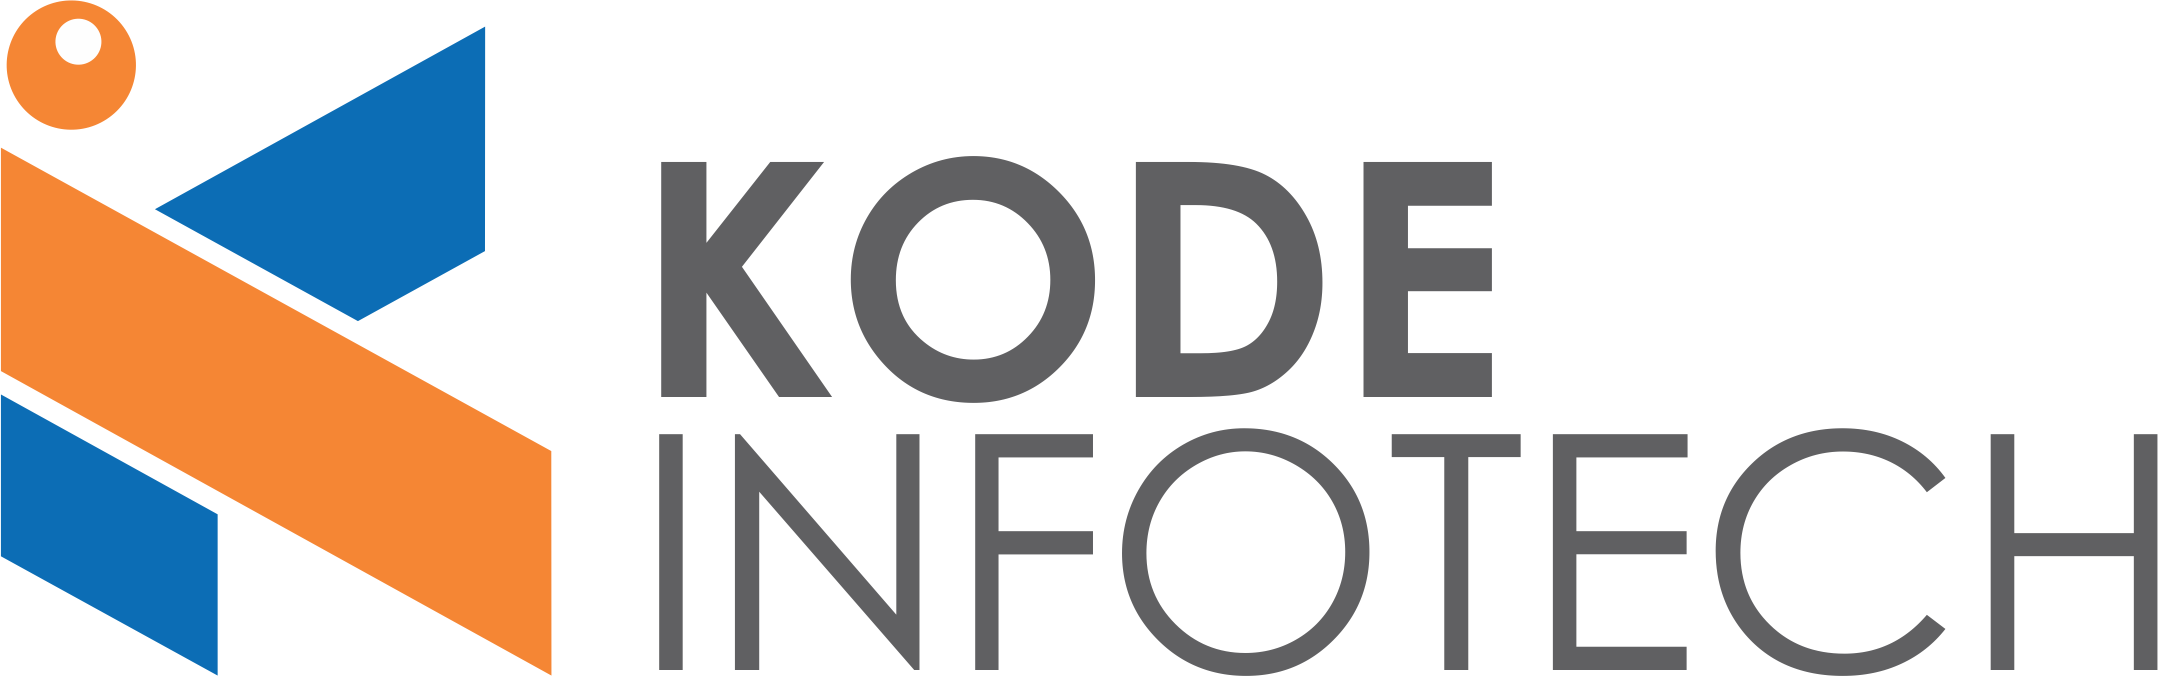 Kode Infotech Profil de la société